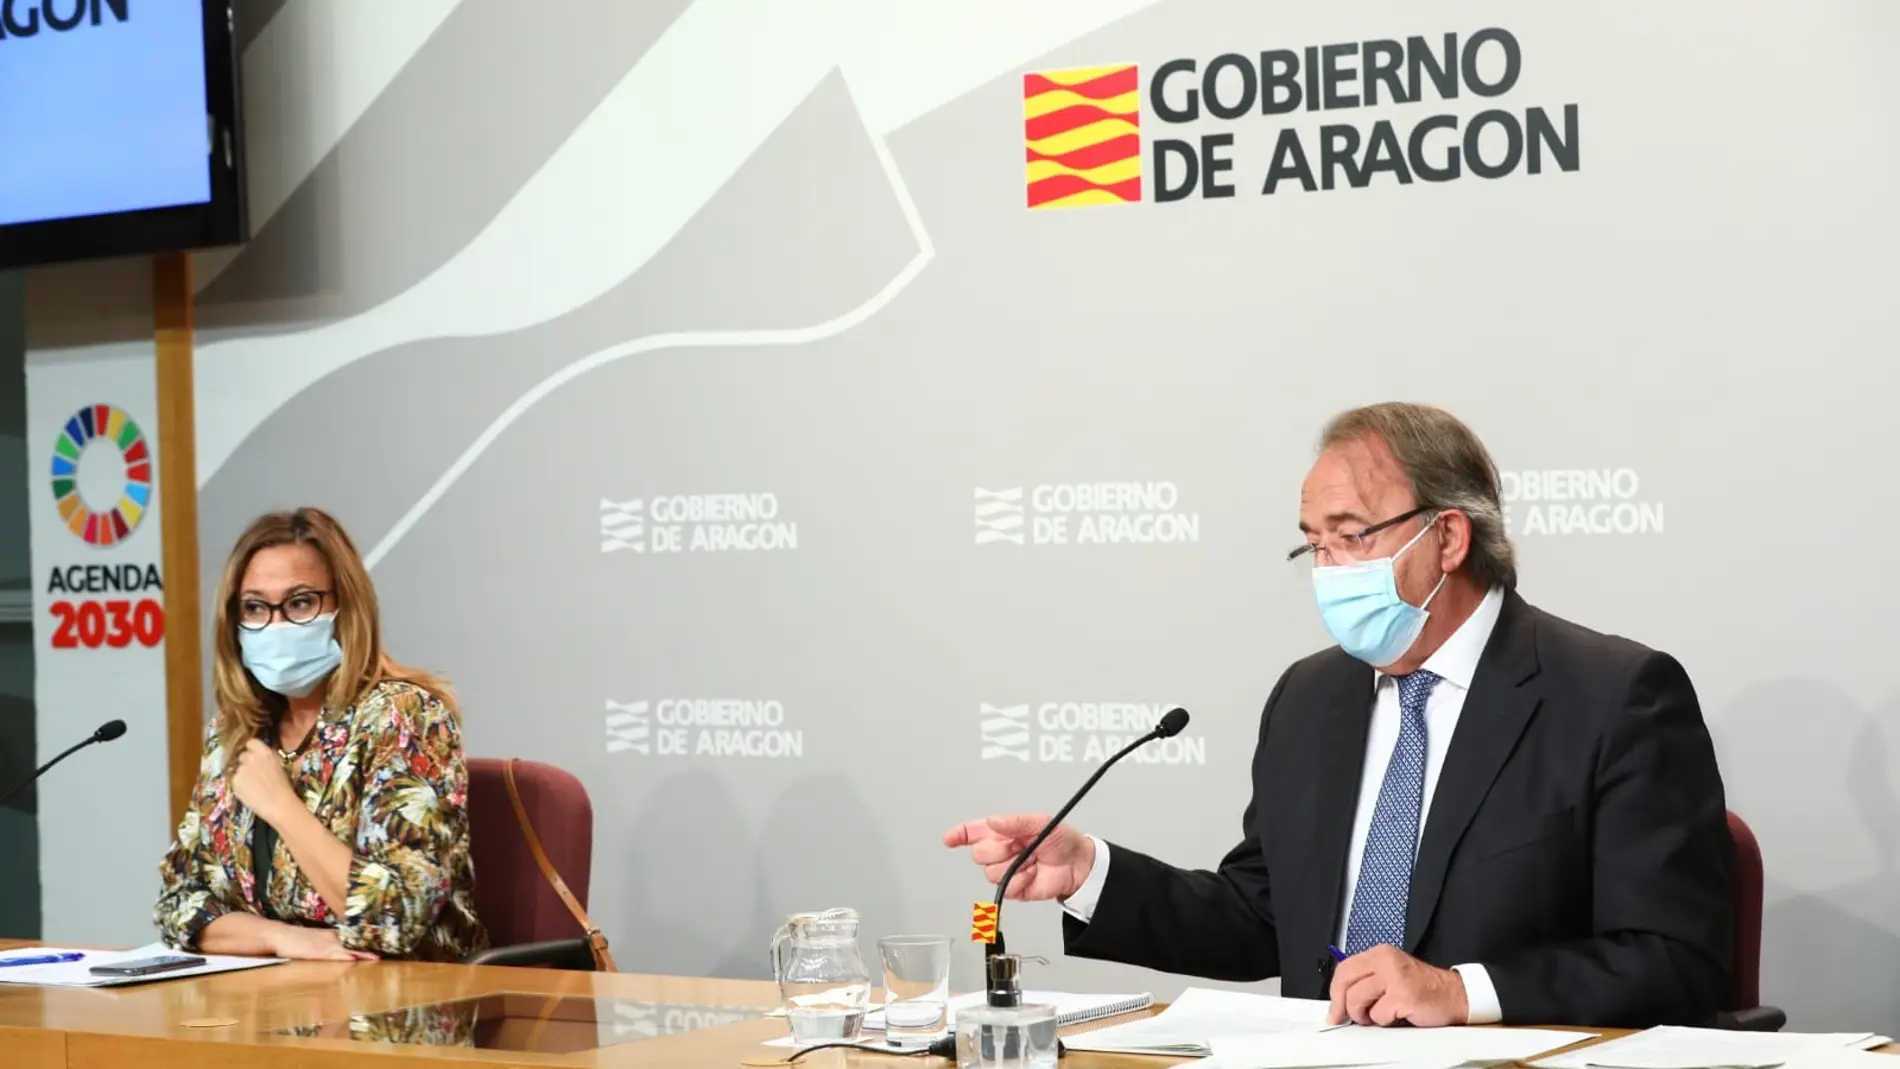 El consejero de Hacienda, Carlos Pérez Anadón, ha presentado el techo de gasto